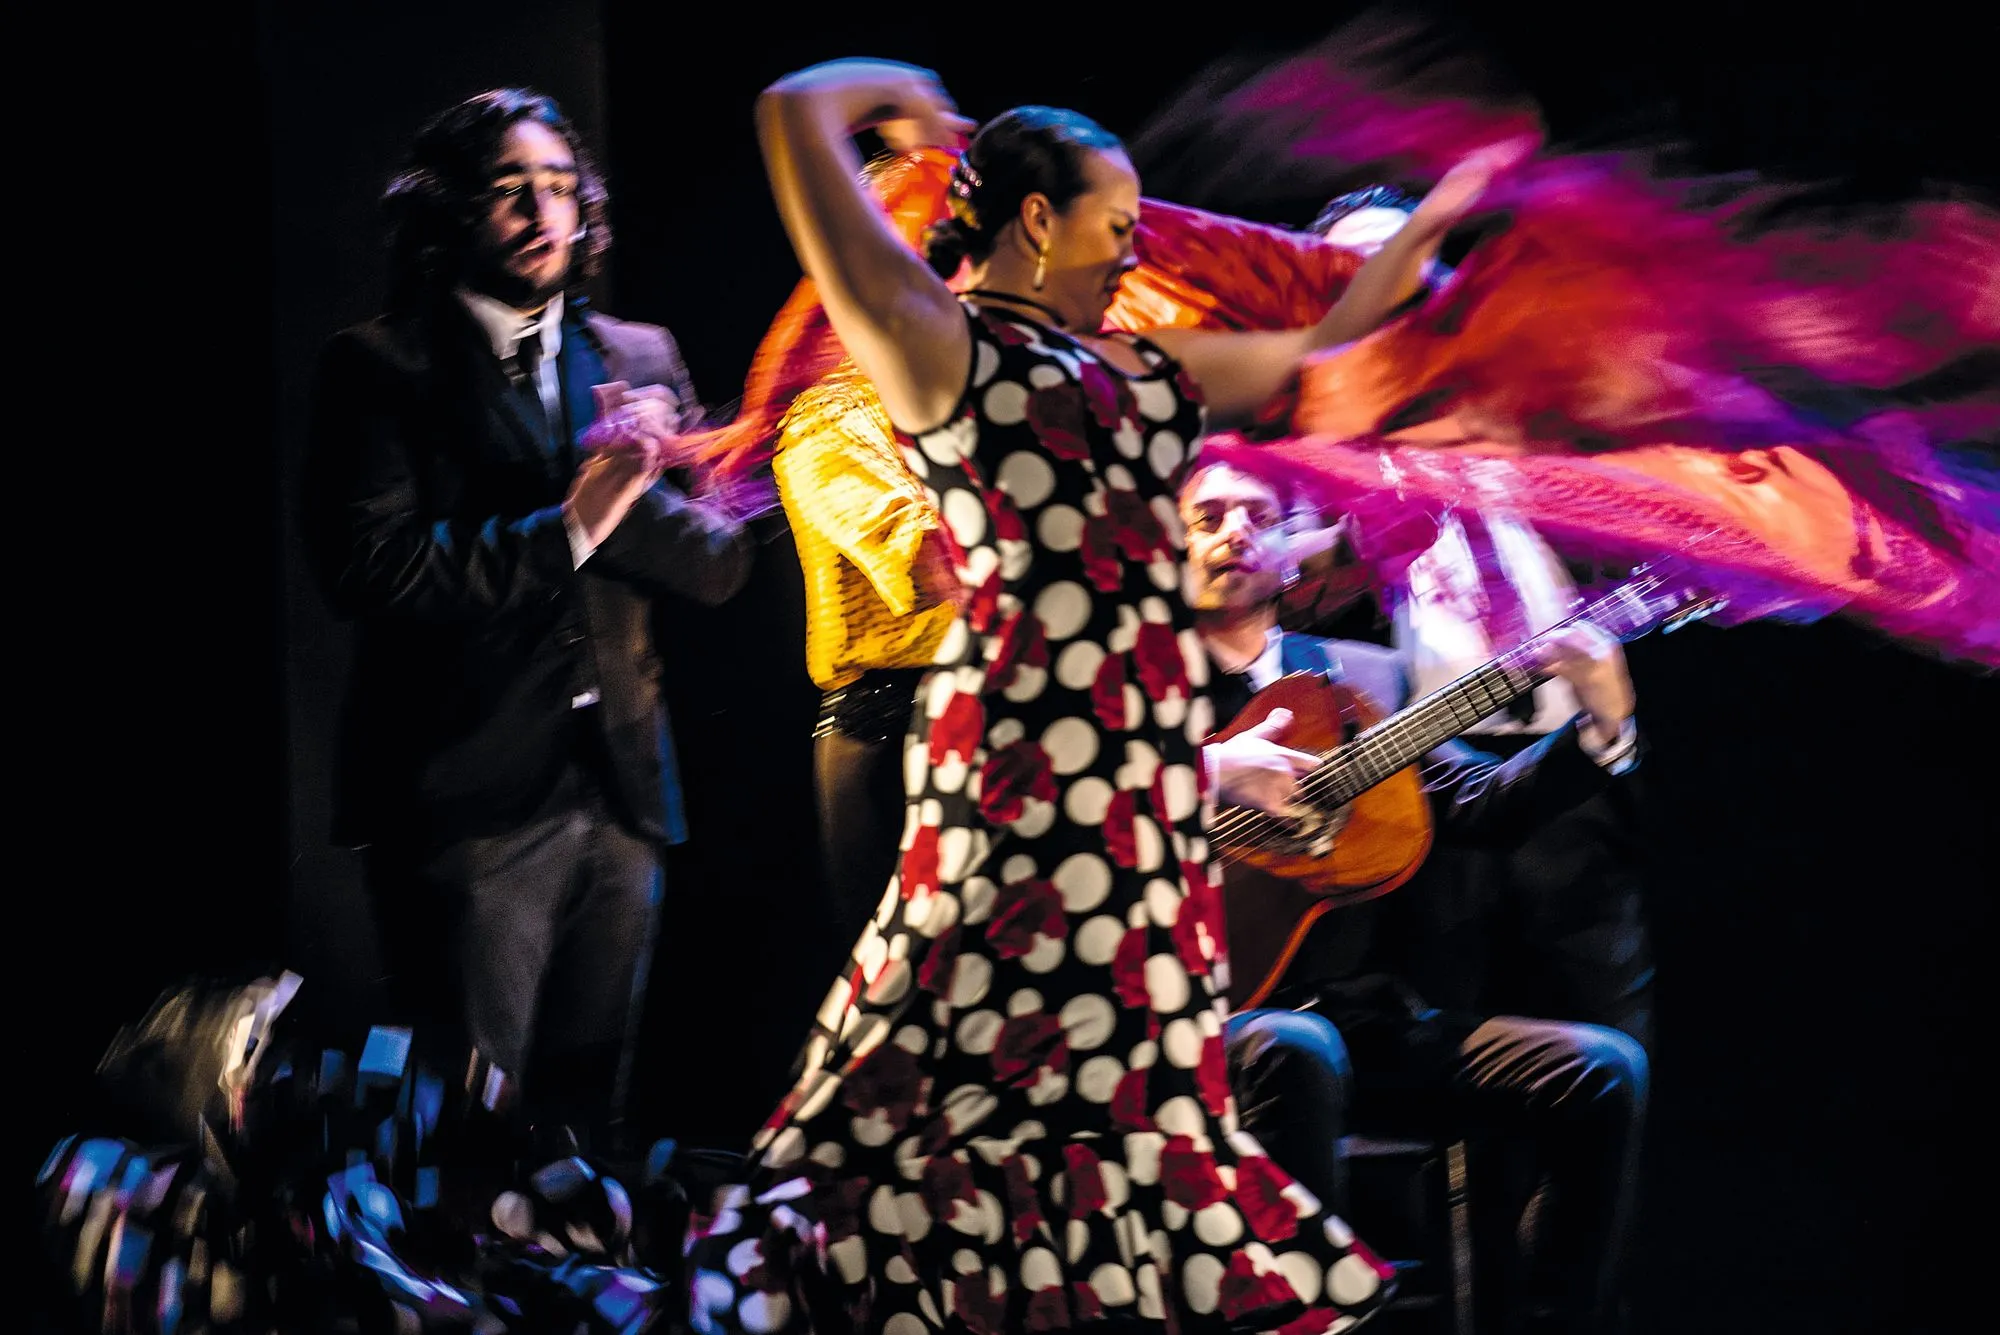 Espectáculo de flamenco Emociones, Teatro Flamenco Madrid, 2019.